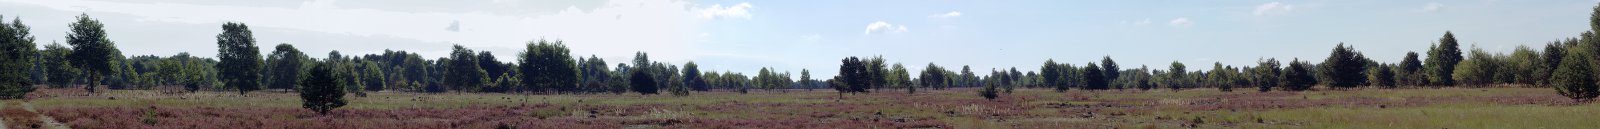 Kloster Himmelpfort, Erholungsort im Wald- und Seengebiet im Norden der Mark Brandenburg: Tangersdorfer Heide